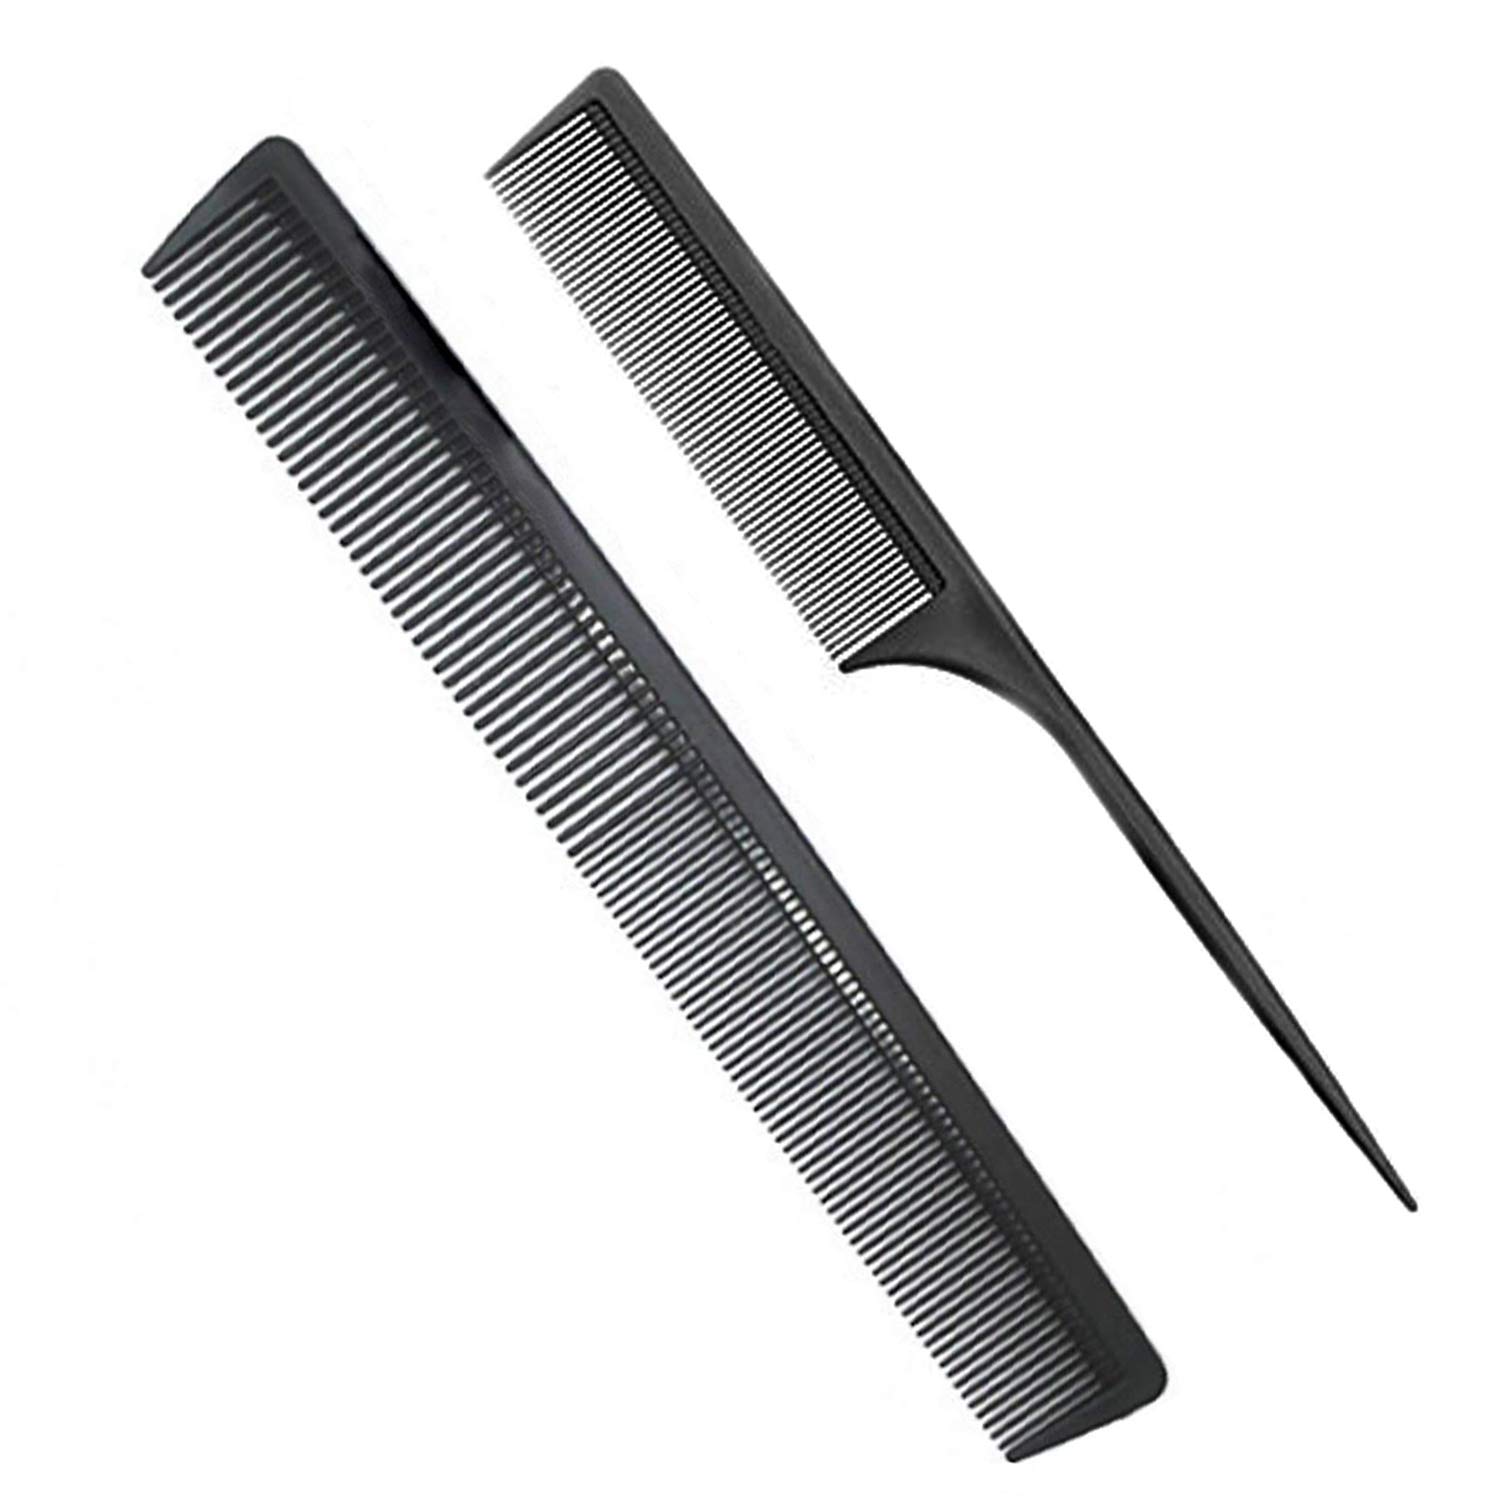 AFT90 Professional Teasing Comb Black Carbon Fiber